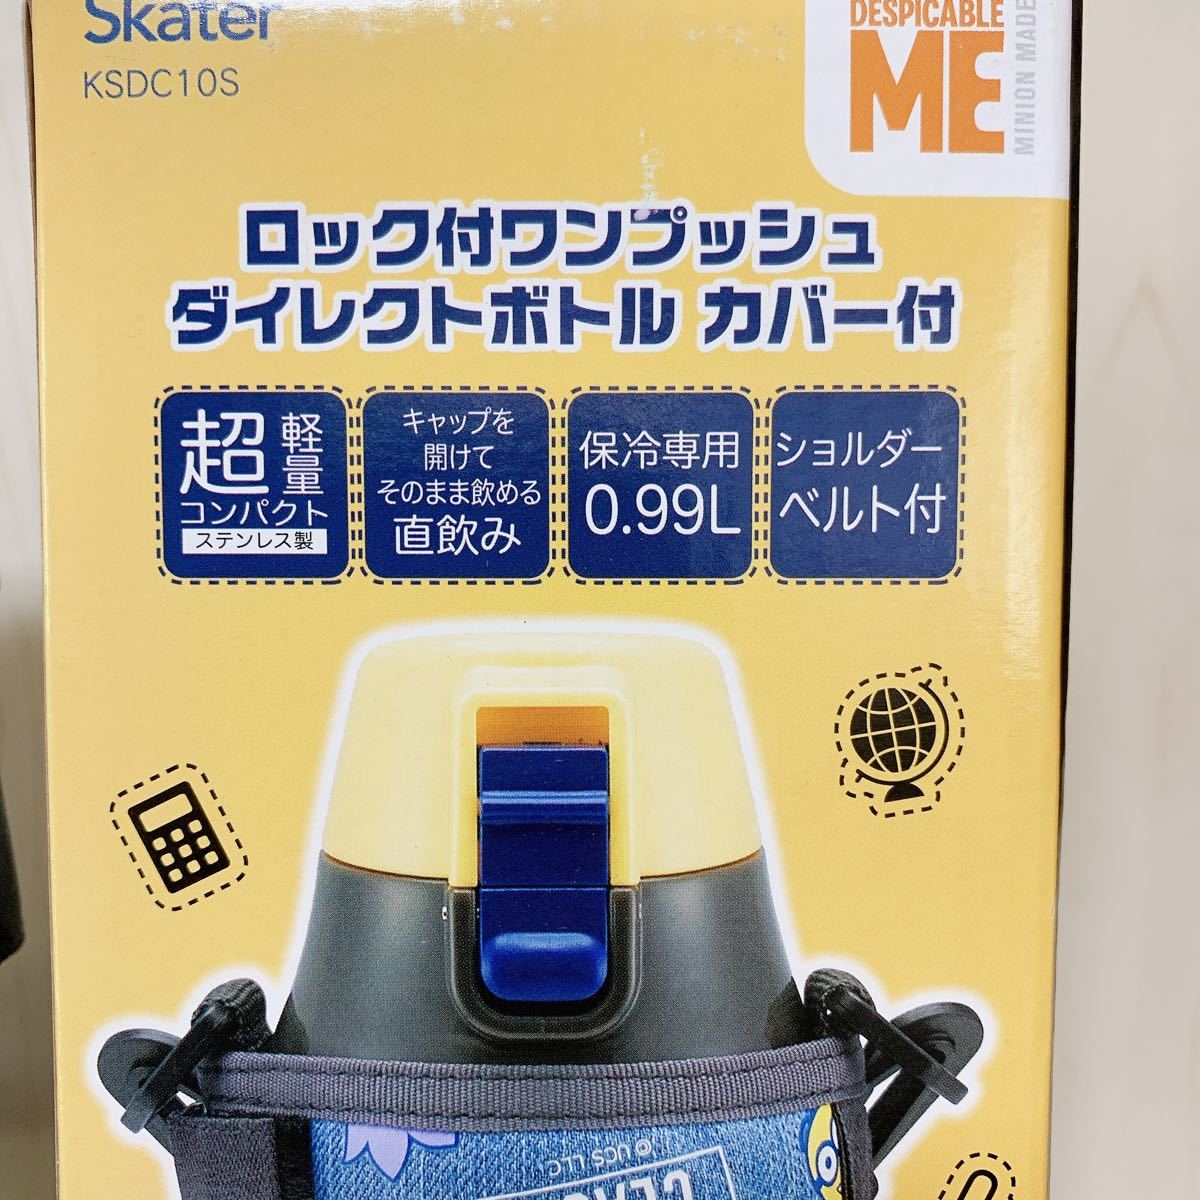 ミニオン☆990mlスケーター スポーツボトル 直飲みボトルカバー付き